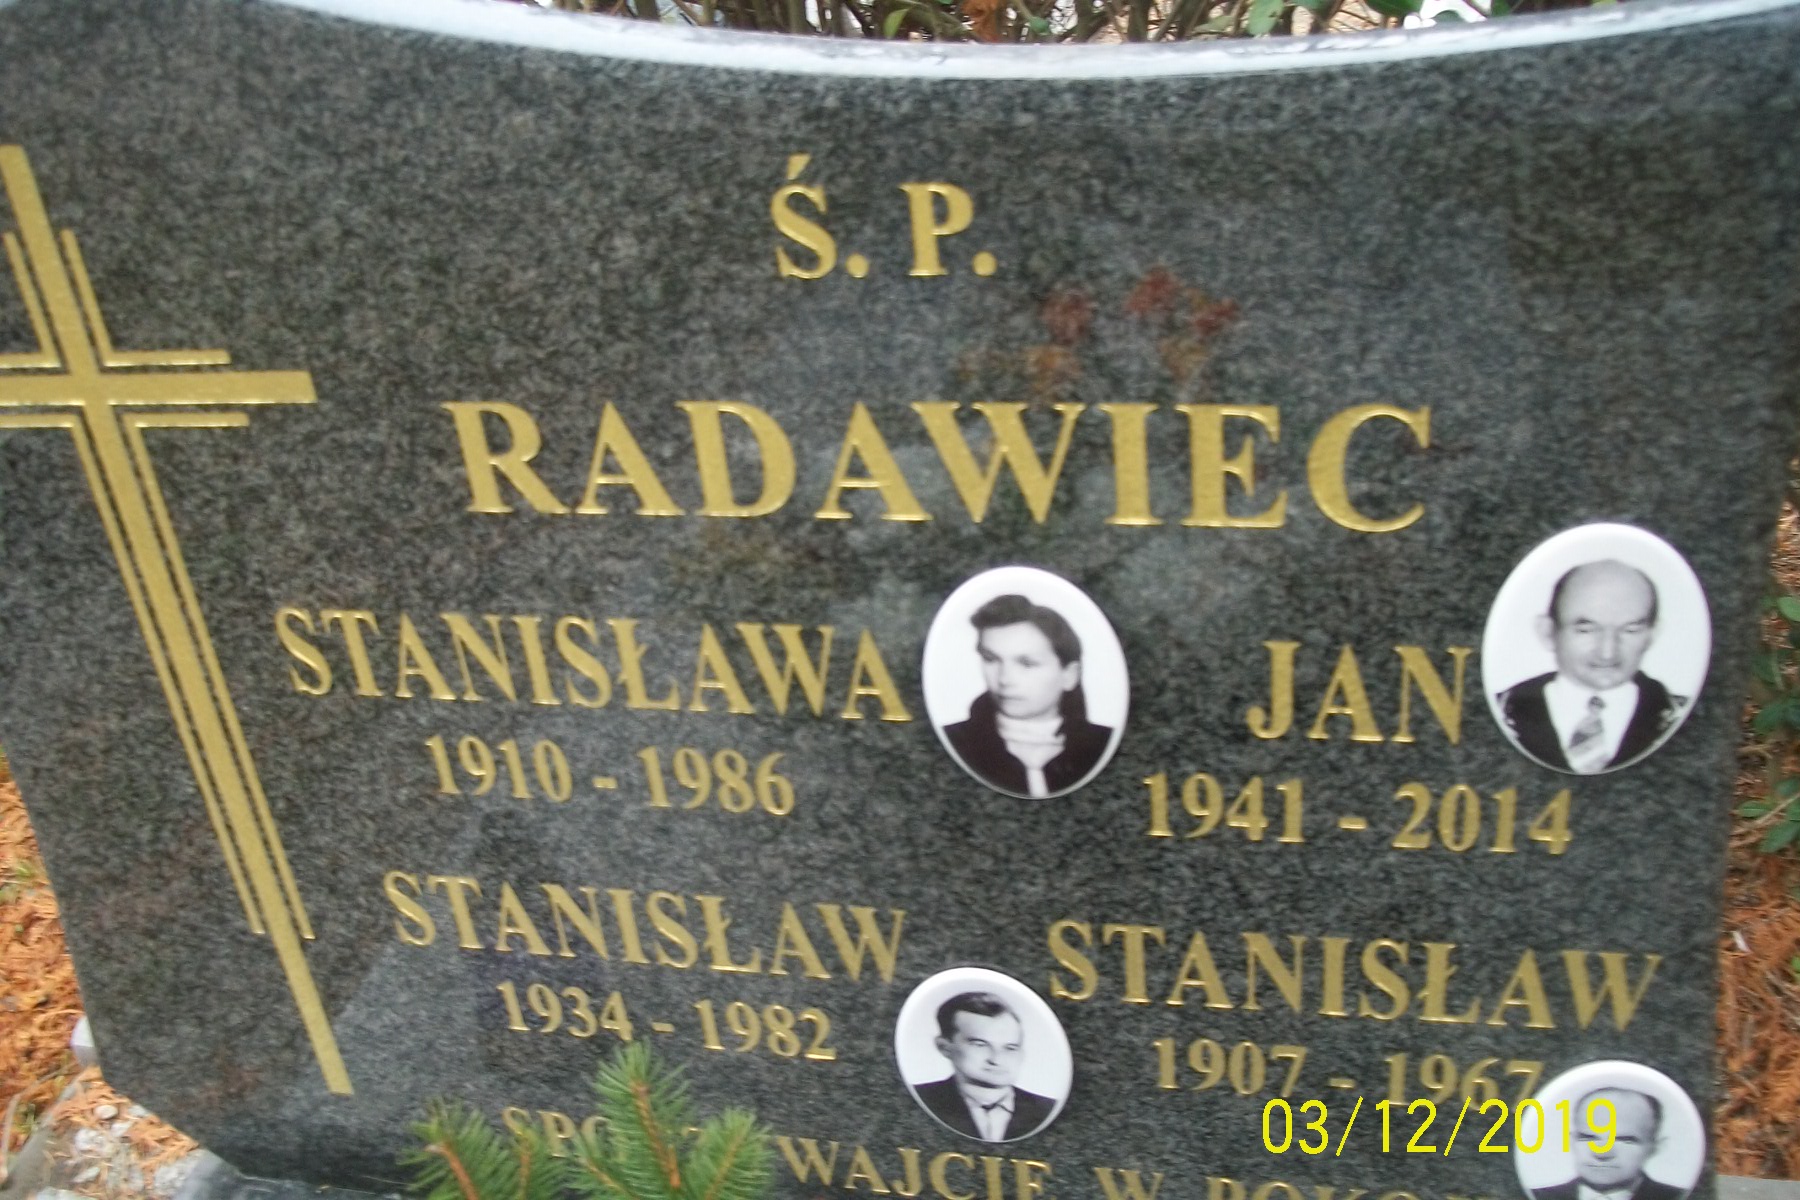 Zdjęcie grobu Stanisław Radawiec